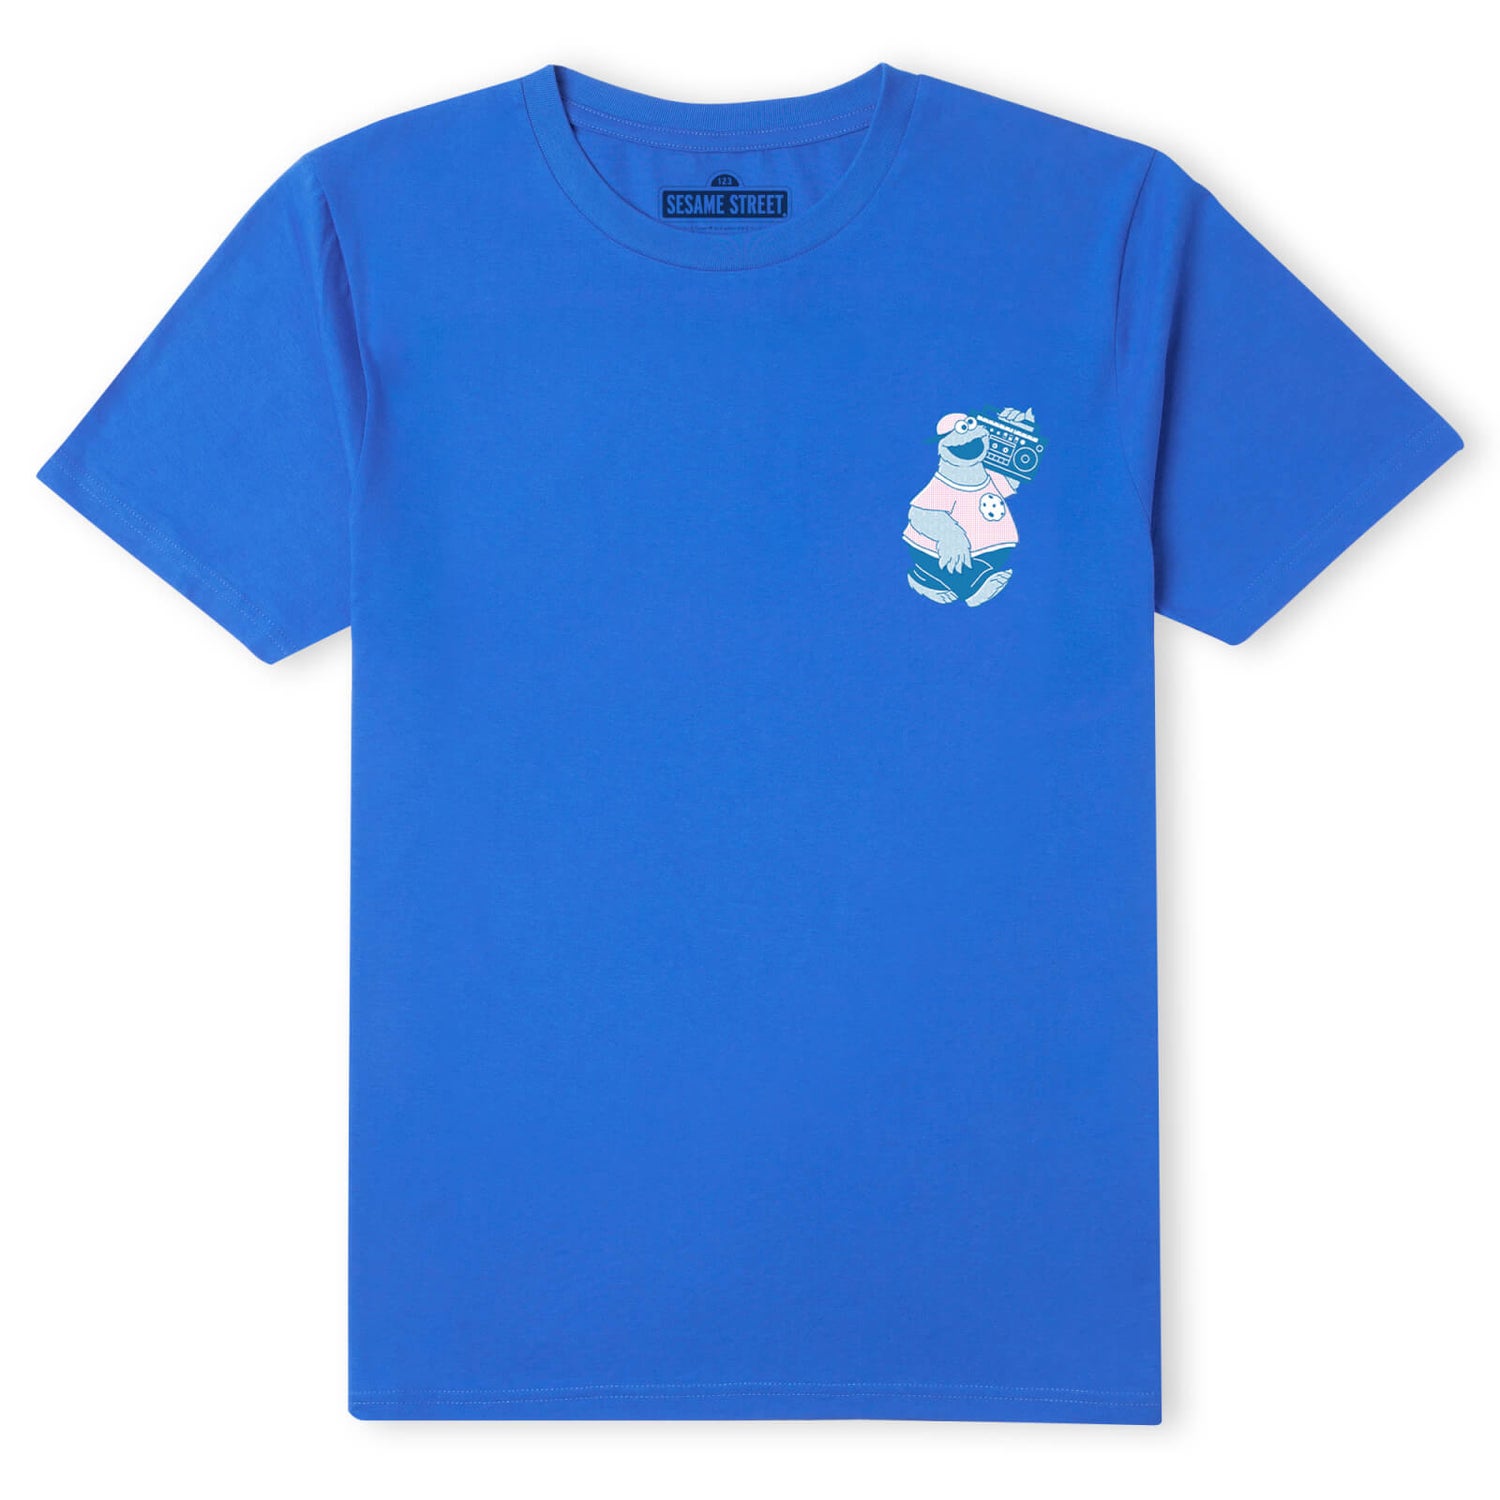 Sesame Street Cookie Monster On Blast Men's T-Shirt - Blue